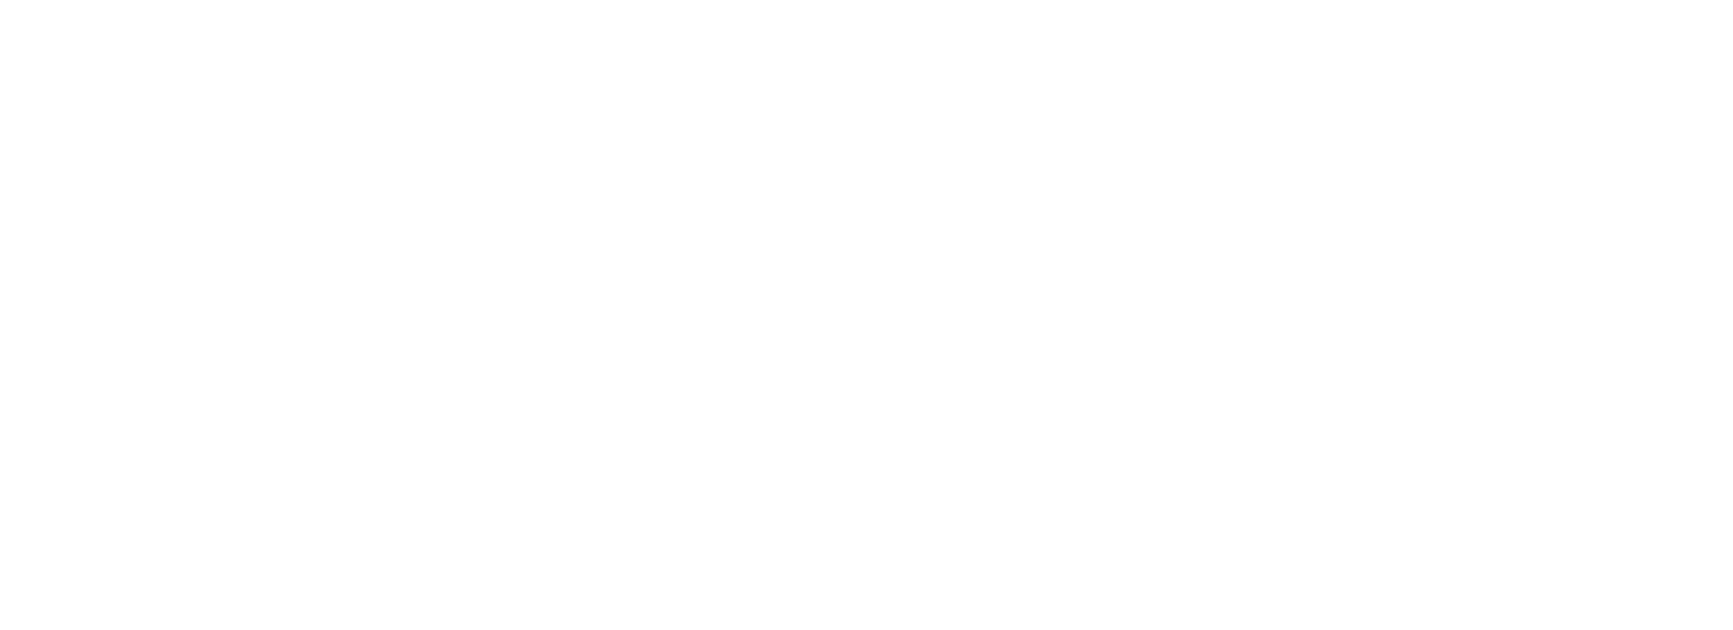 Sustainability International Awards